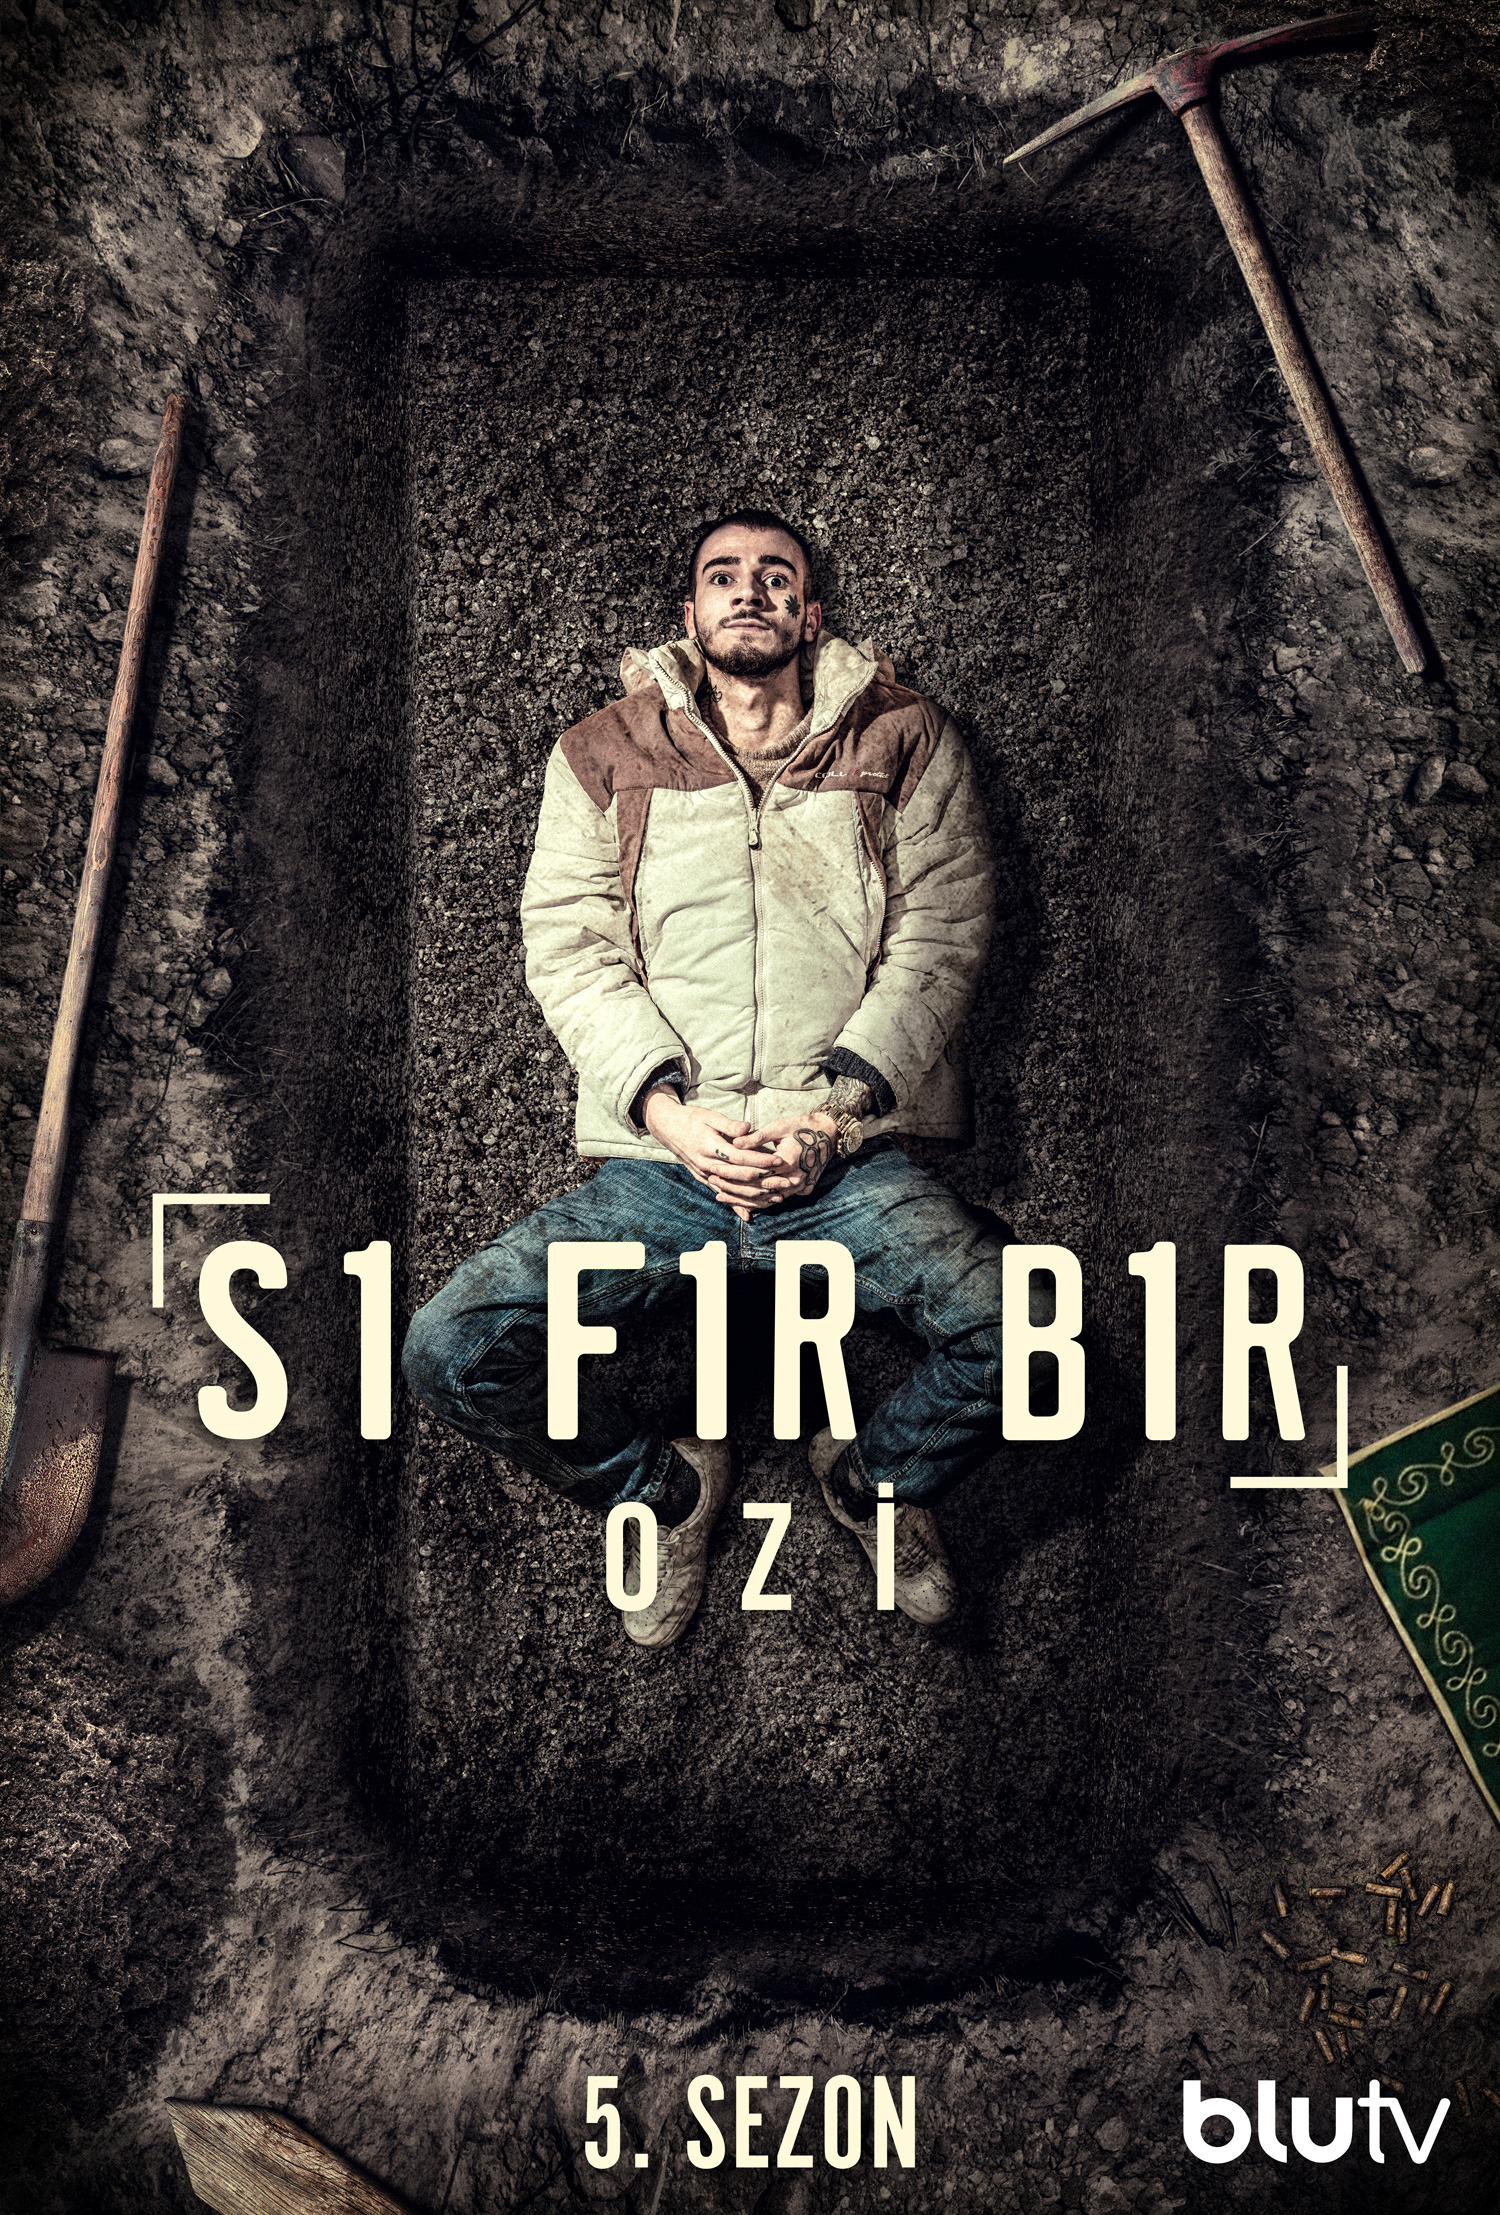 Mega Sized TV Poster Image for Sifir Bir (#18 of 23)